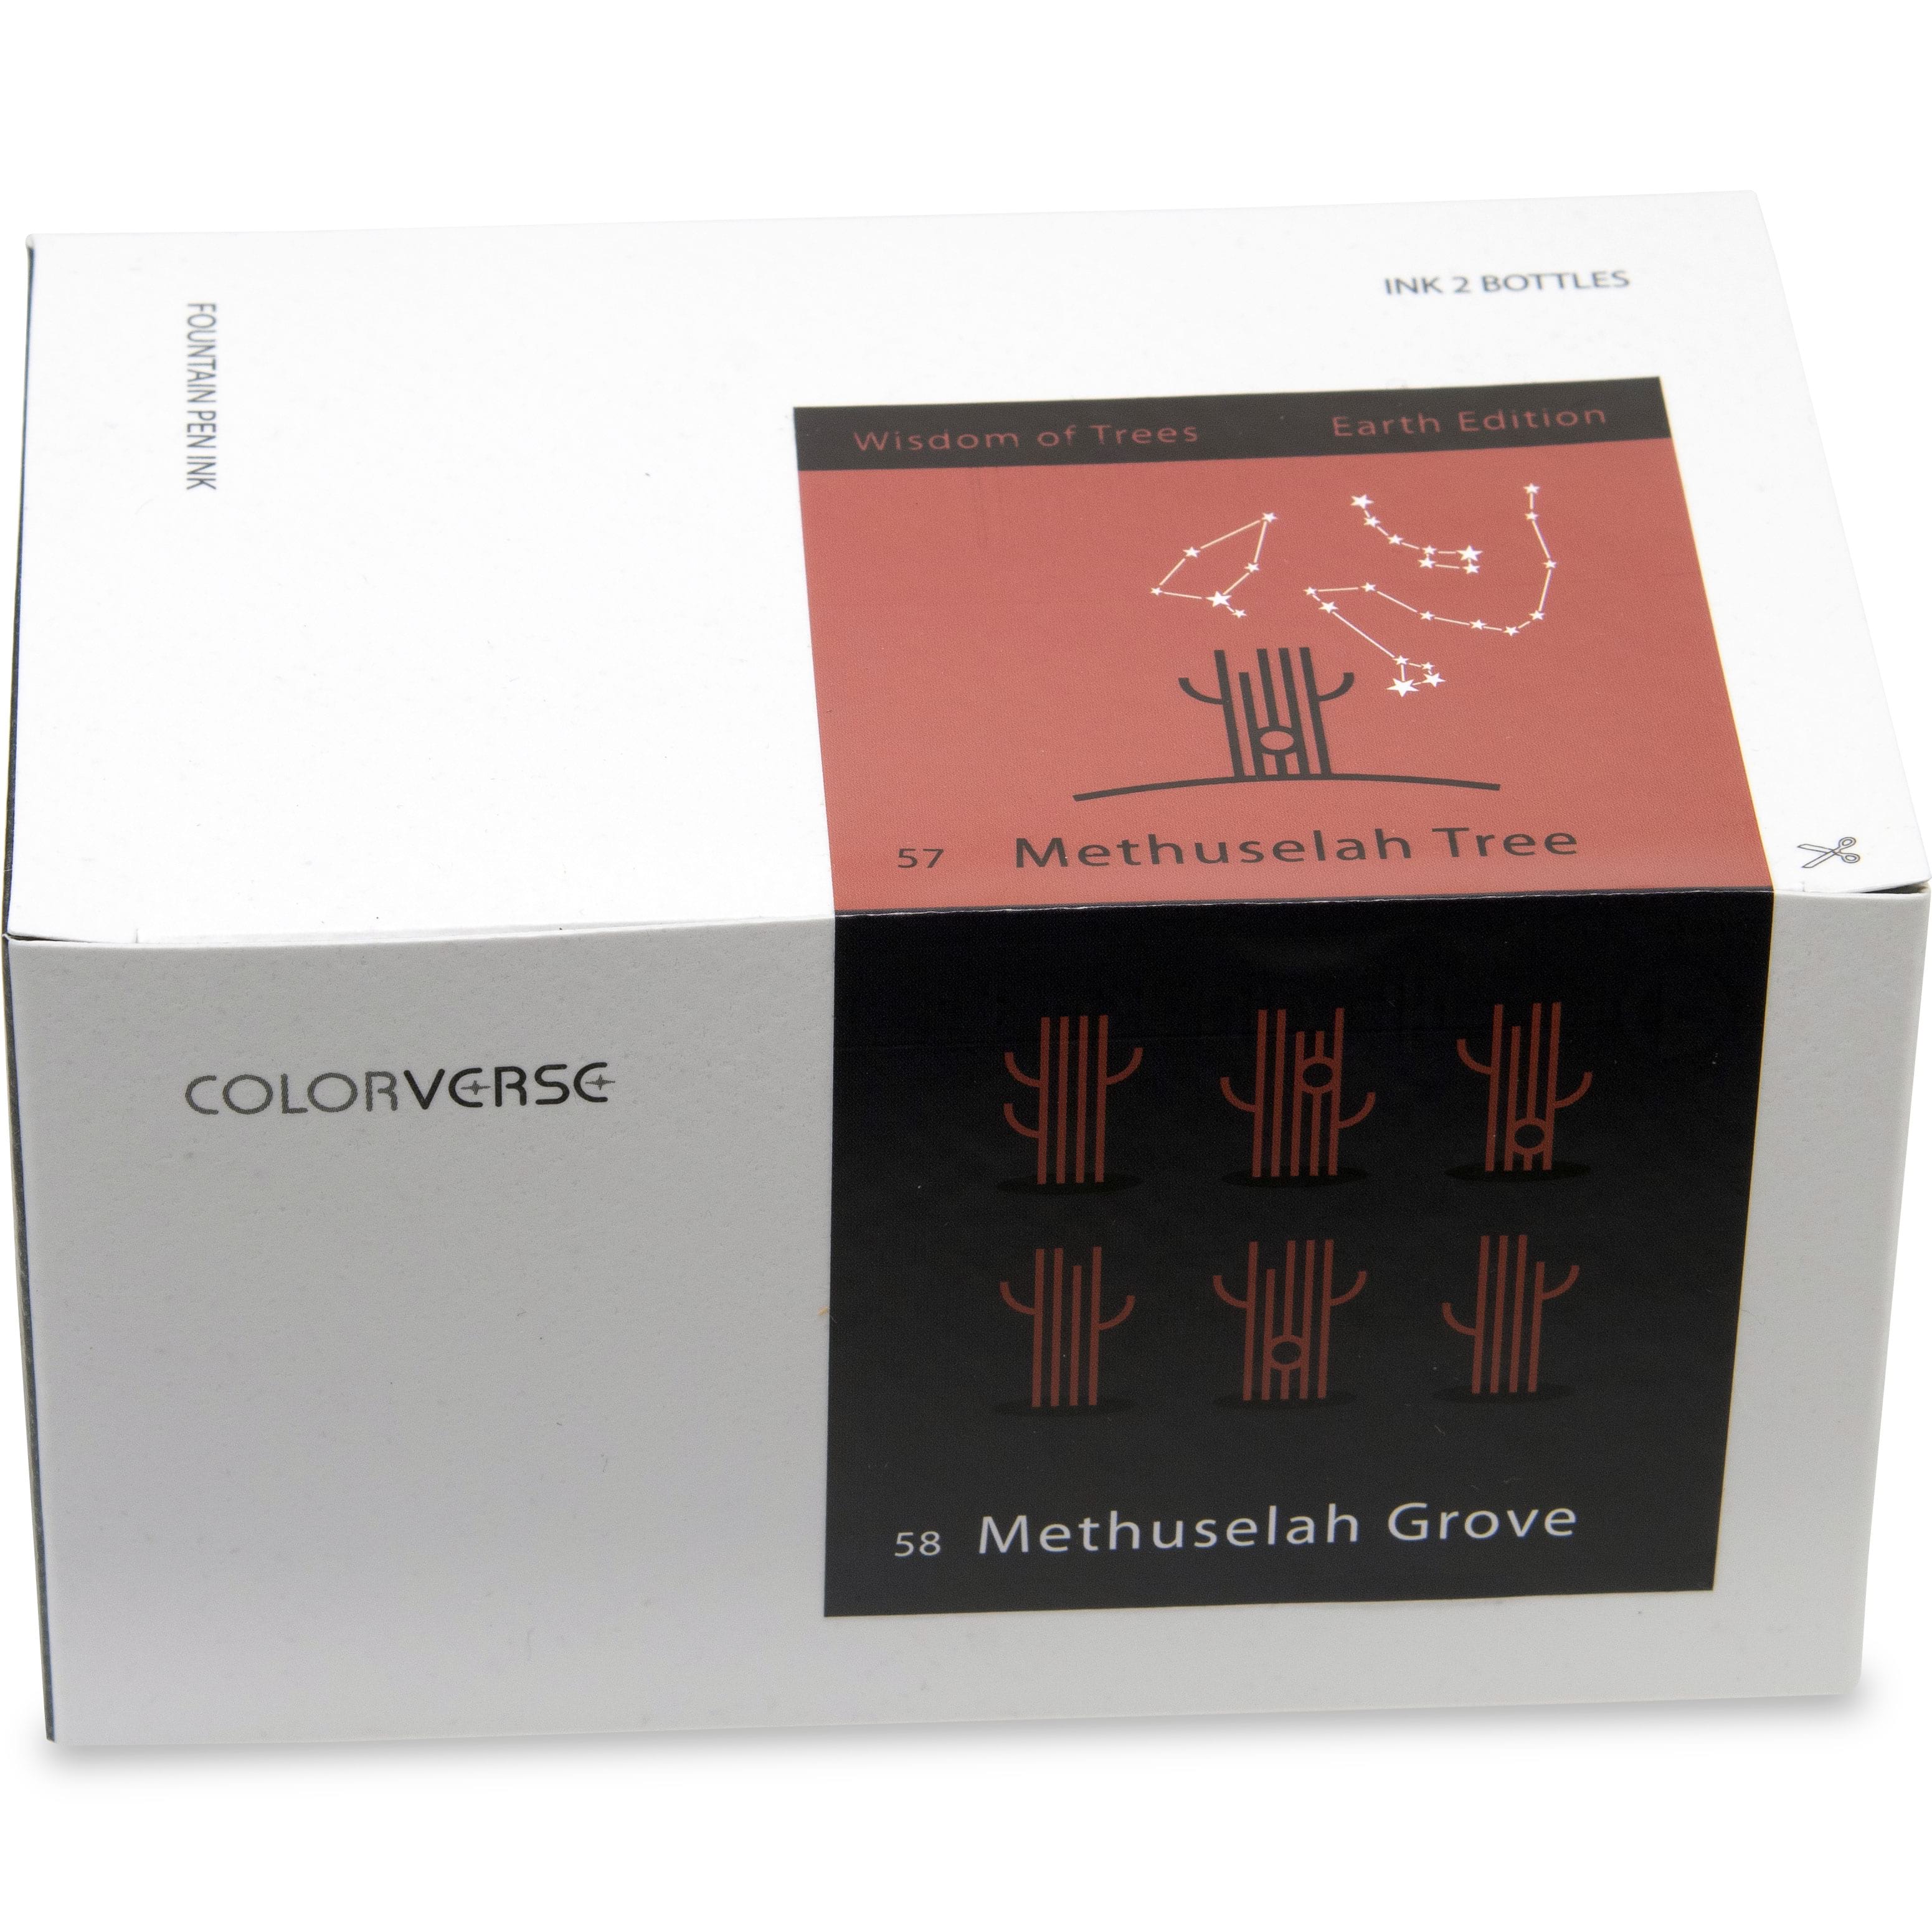 Colorverse Ink - Earth Edition - Methuselah Tree & Methuselah Grove